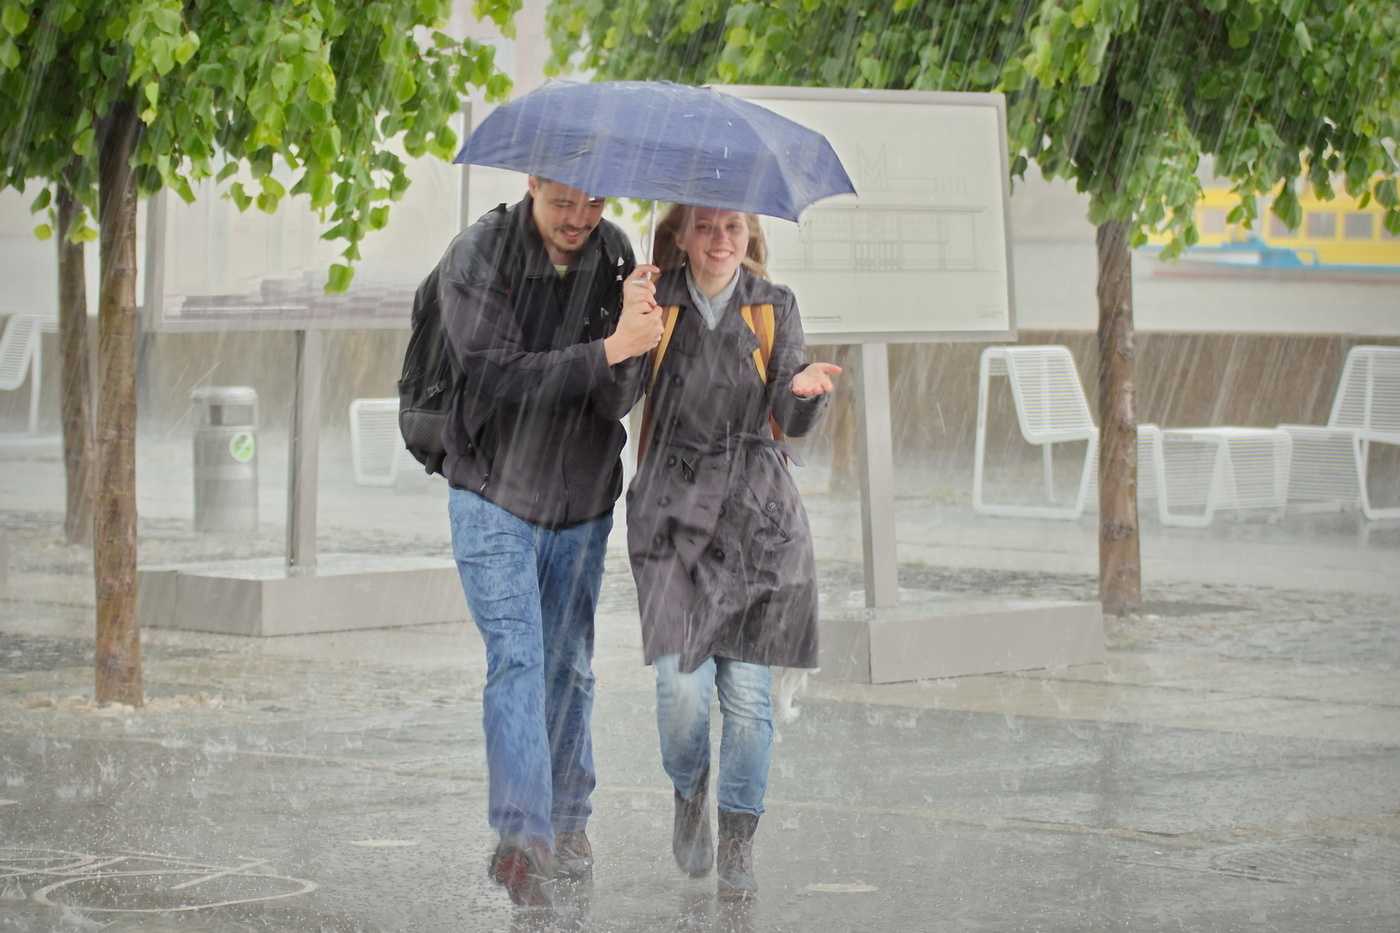 Люди на улице под дождем